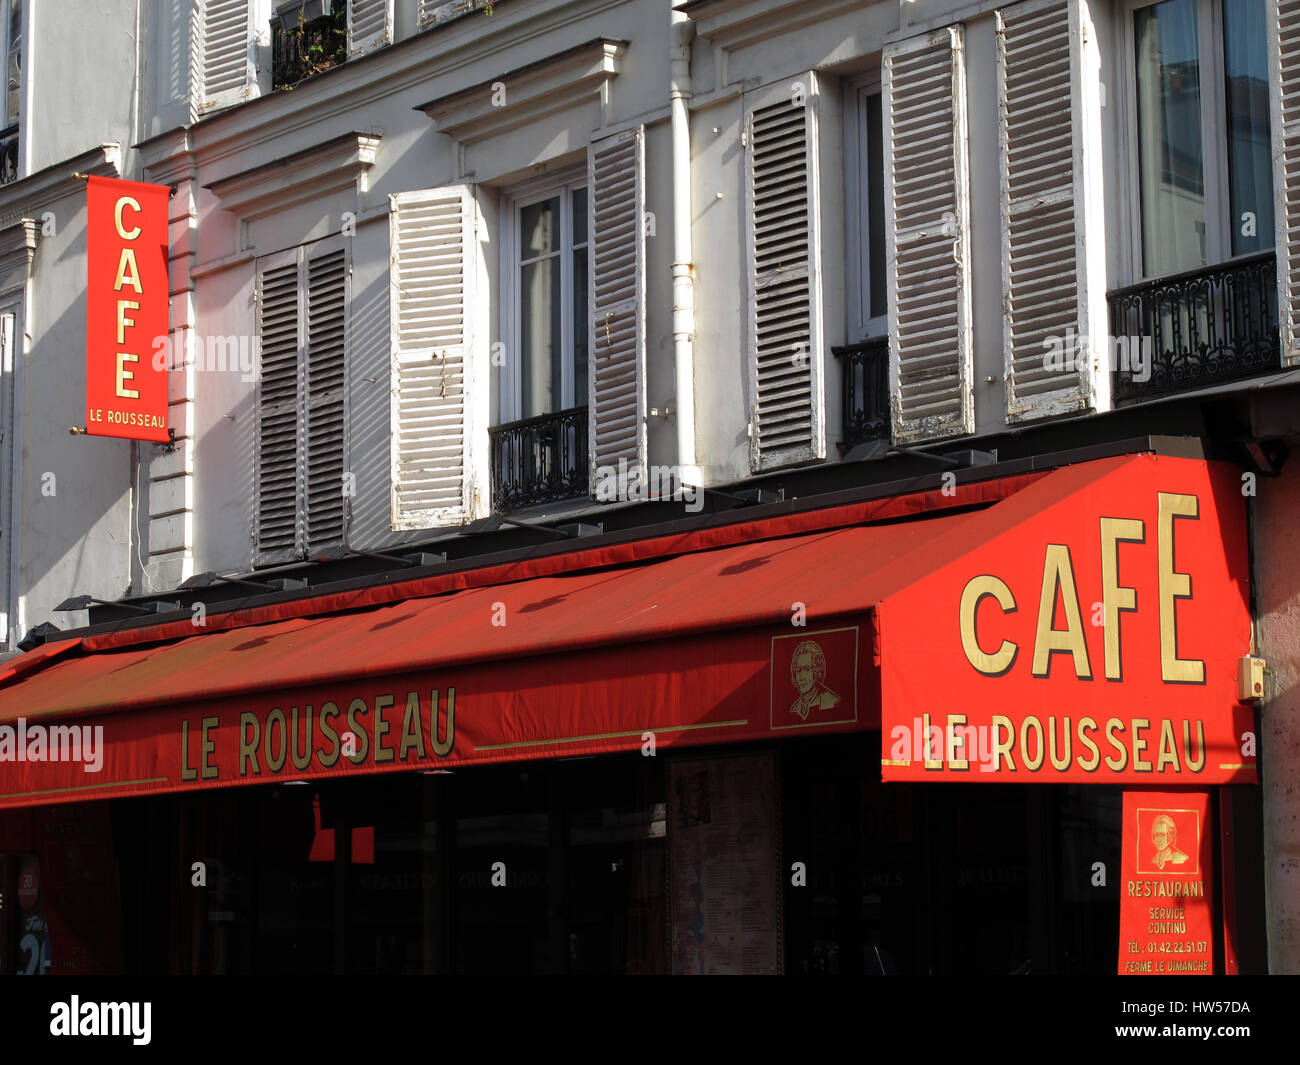 Cafe restaurant Le Rousseau, rue du Cherche-Midi, Paris, France, Europe ...